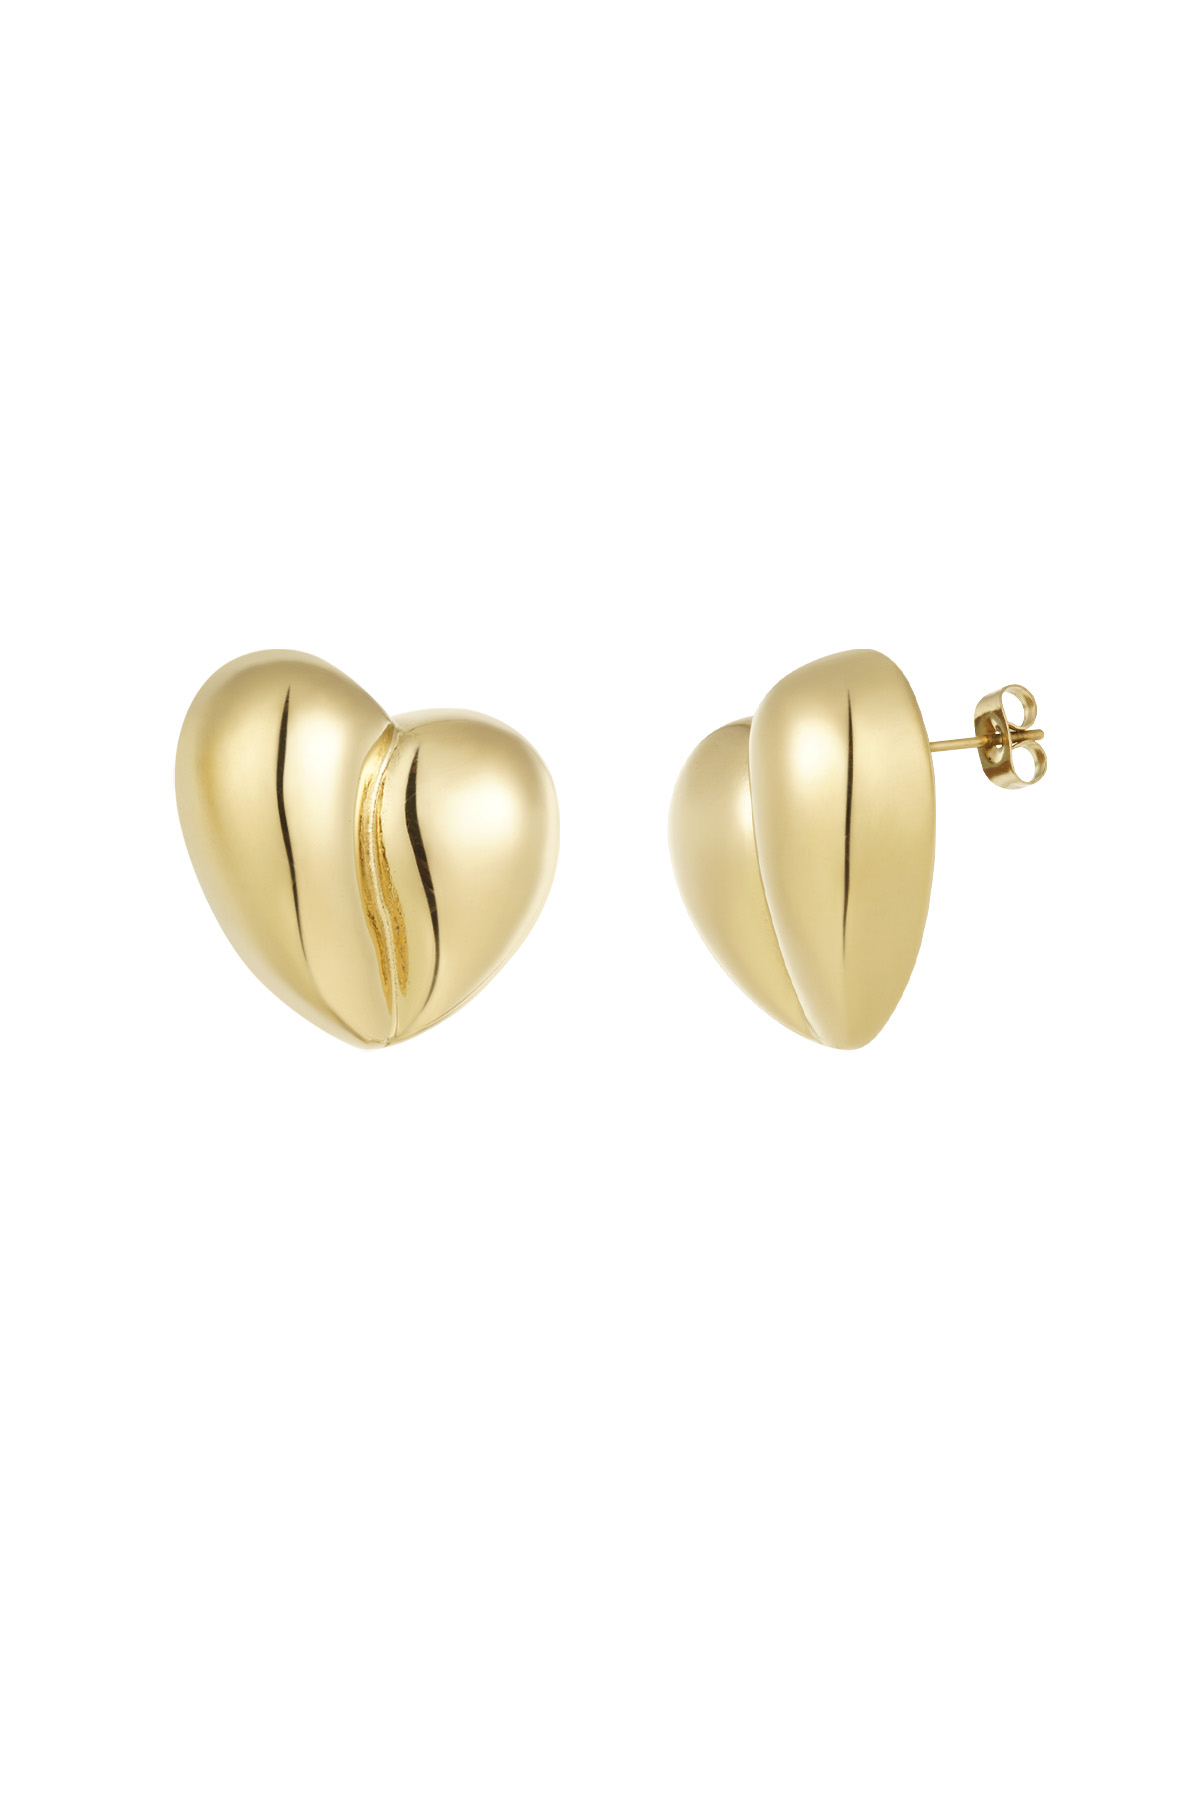 Earrings heart shape - gold h5 